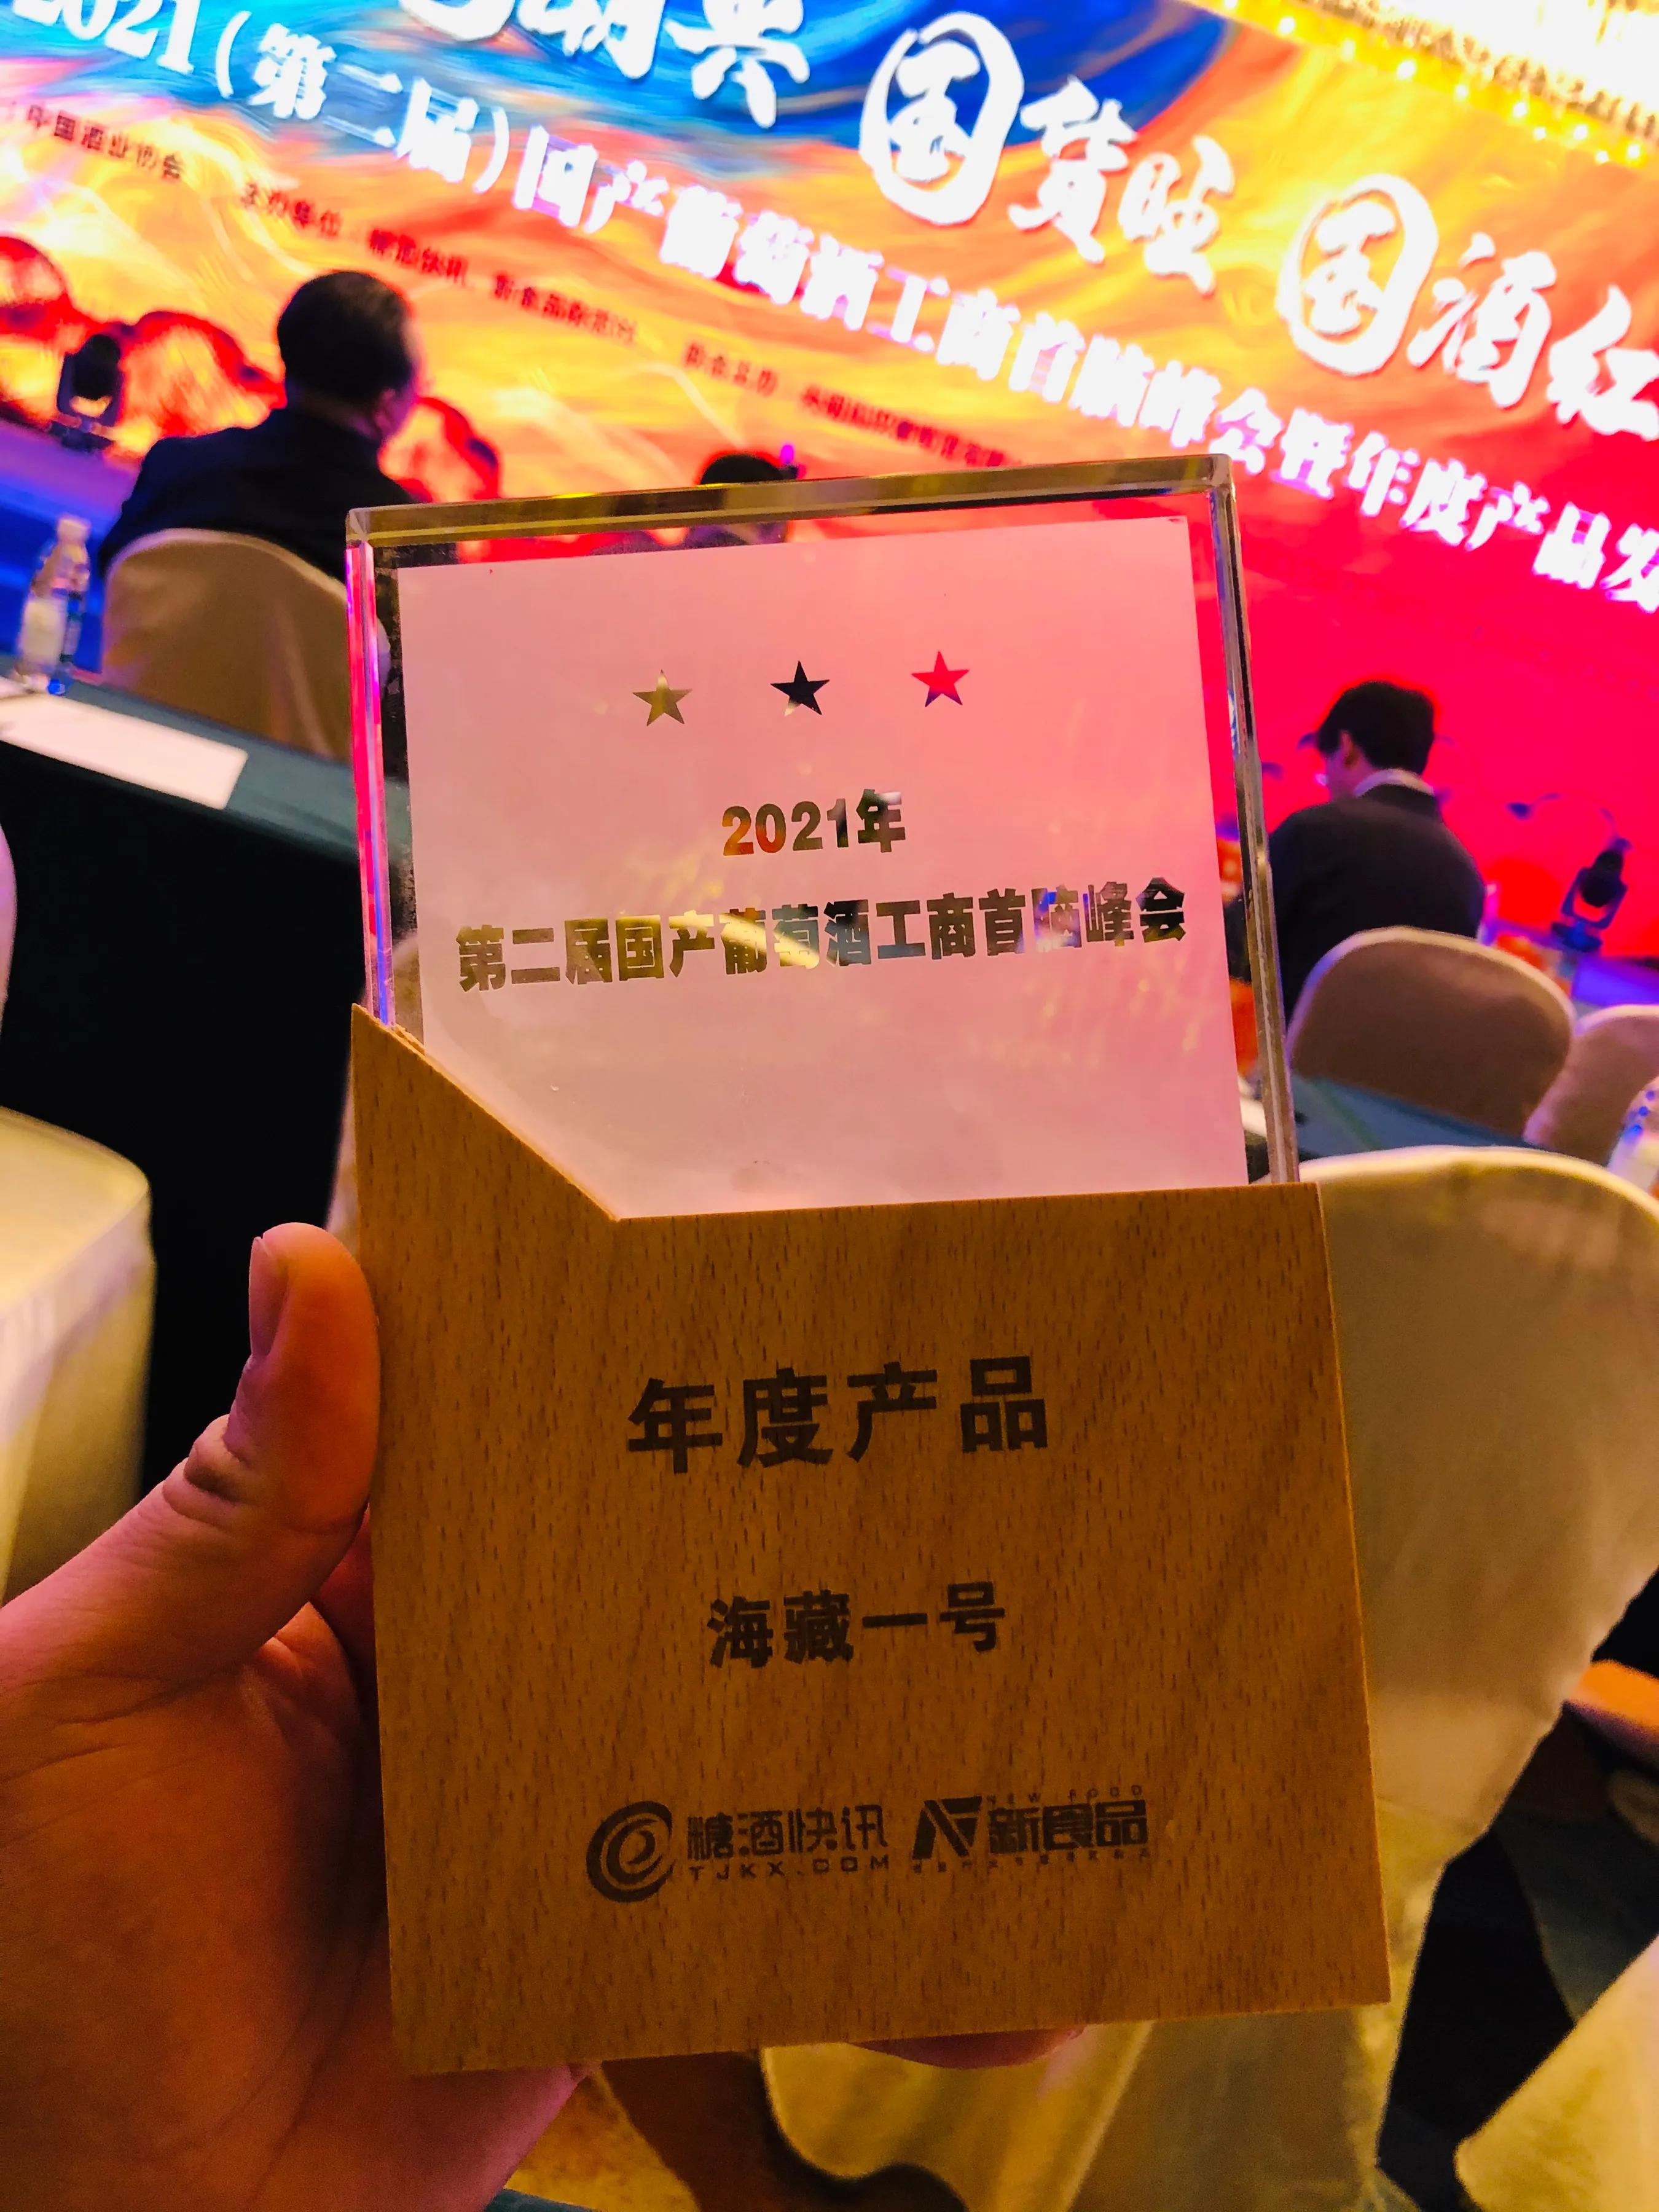 海藏壹号荣获第二届国产葡萄酒工商首脑峰会年度创新奖